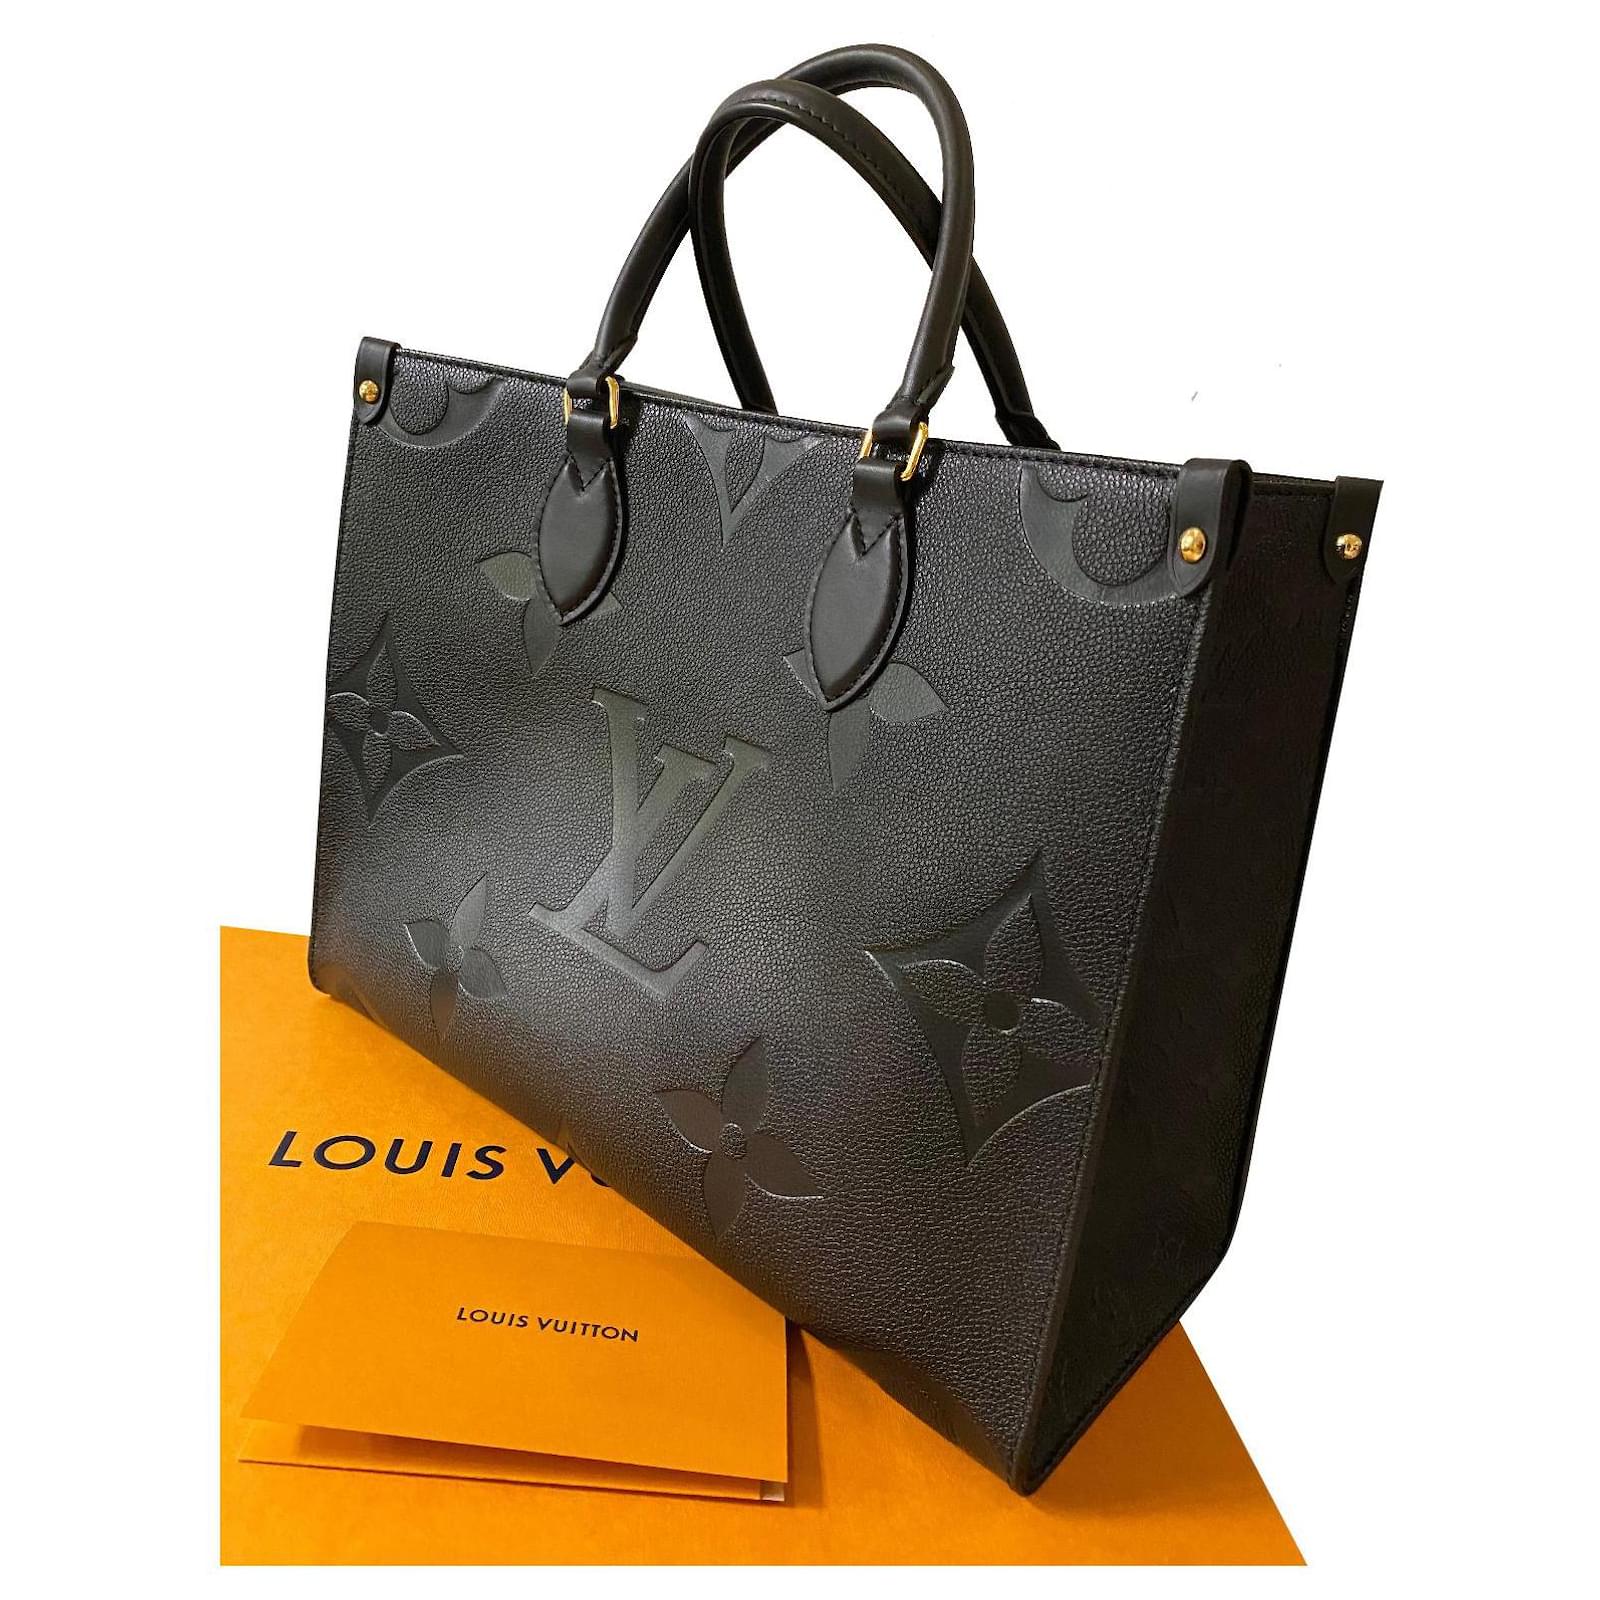 Cartera bandolera Louis Vuitton Pochette Métis diseño monogram empreinte  bicolor de cuero granulado negra y beige con correa de hombro negra asas  color negro y herrajes metal